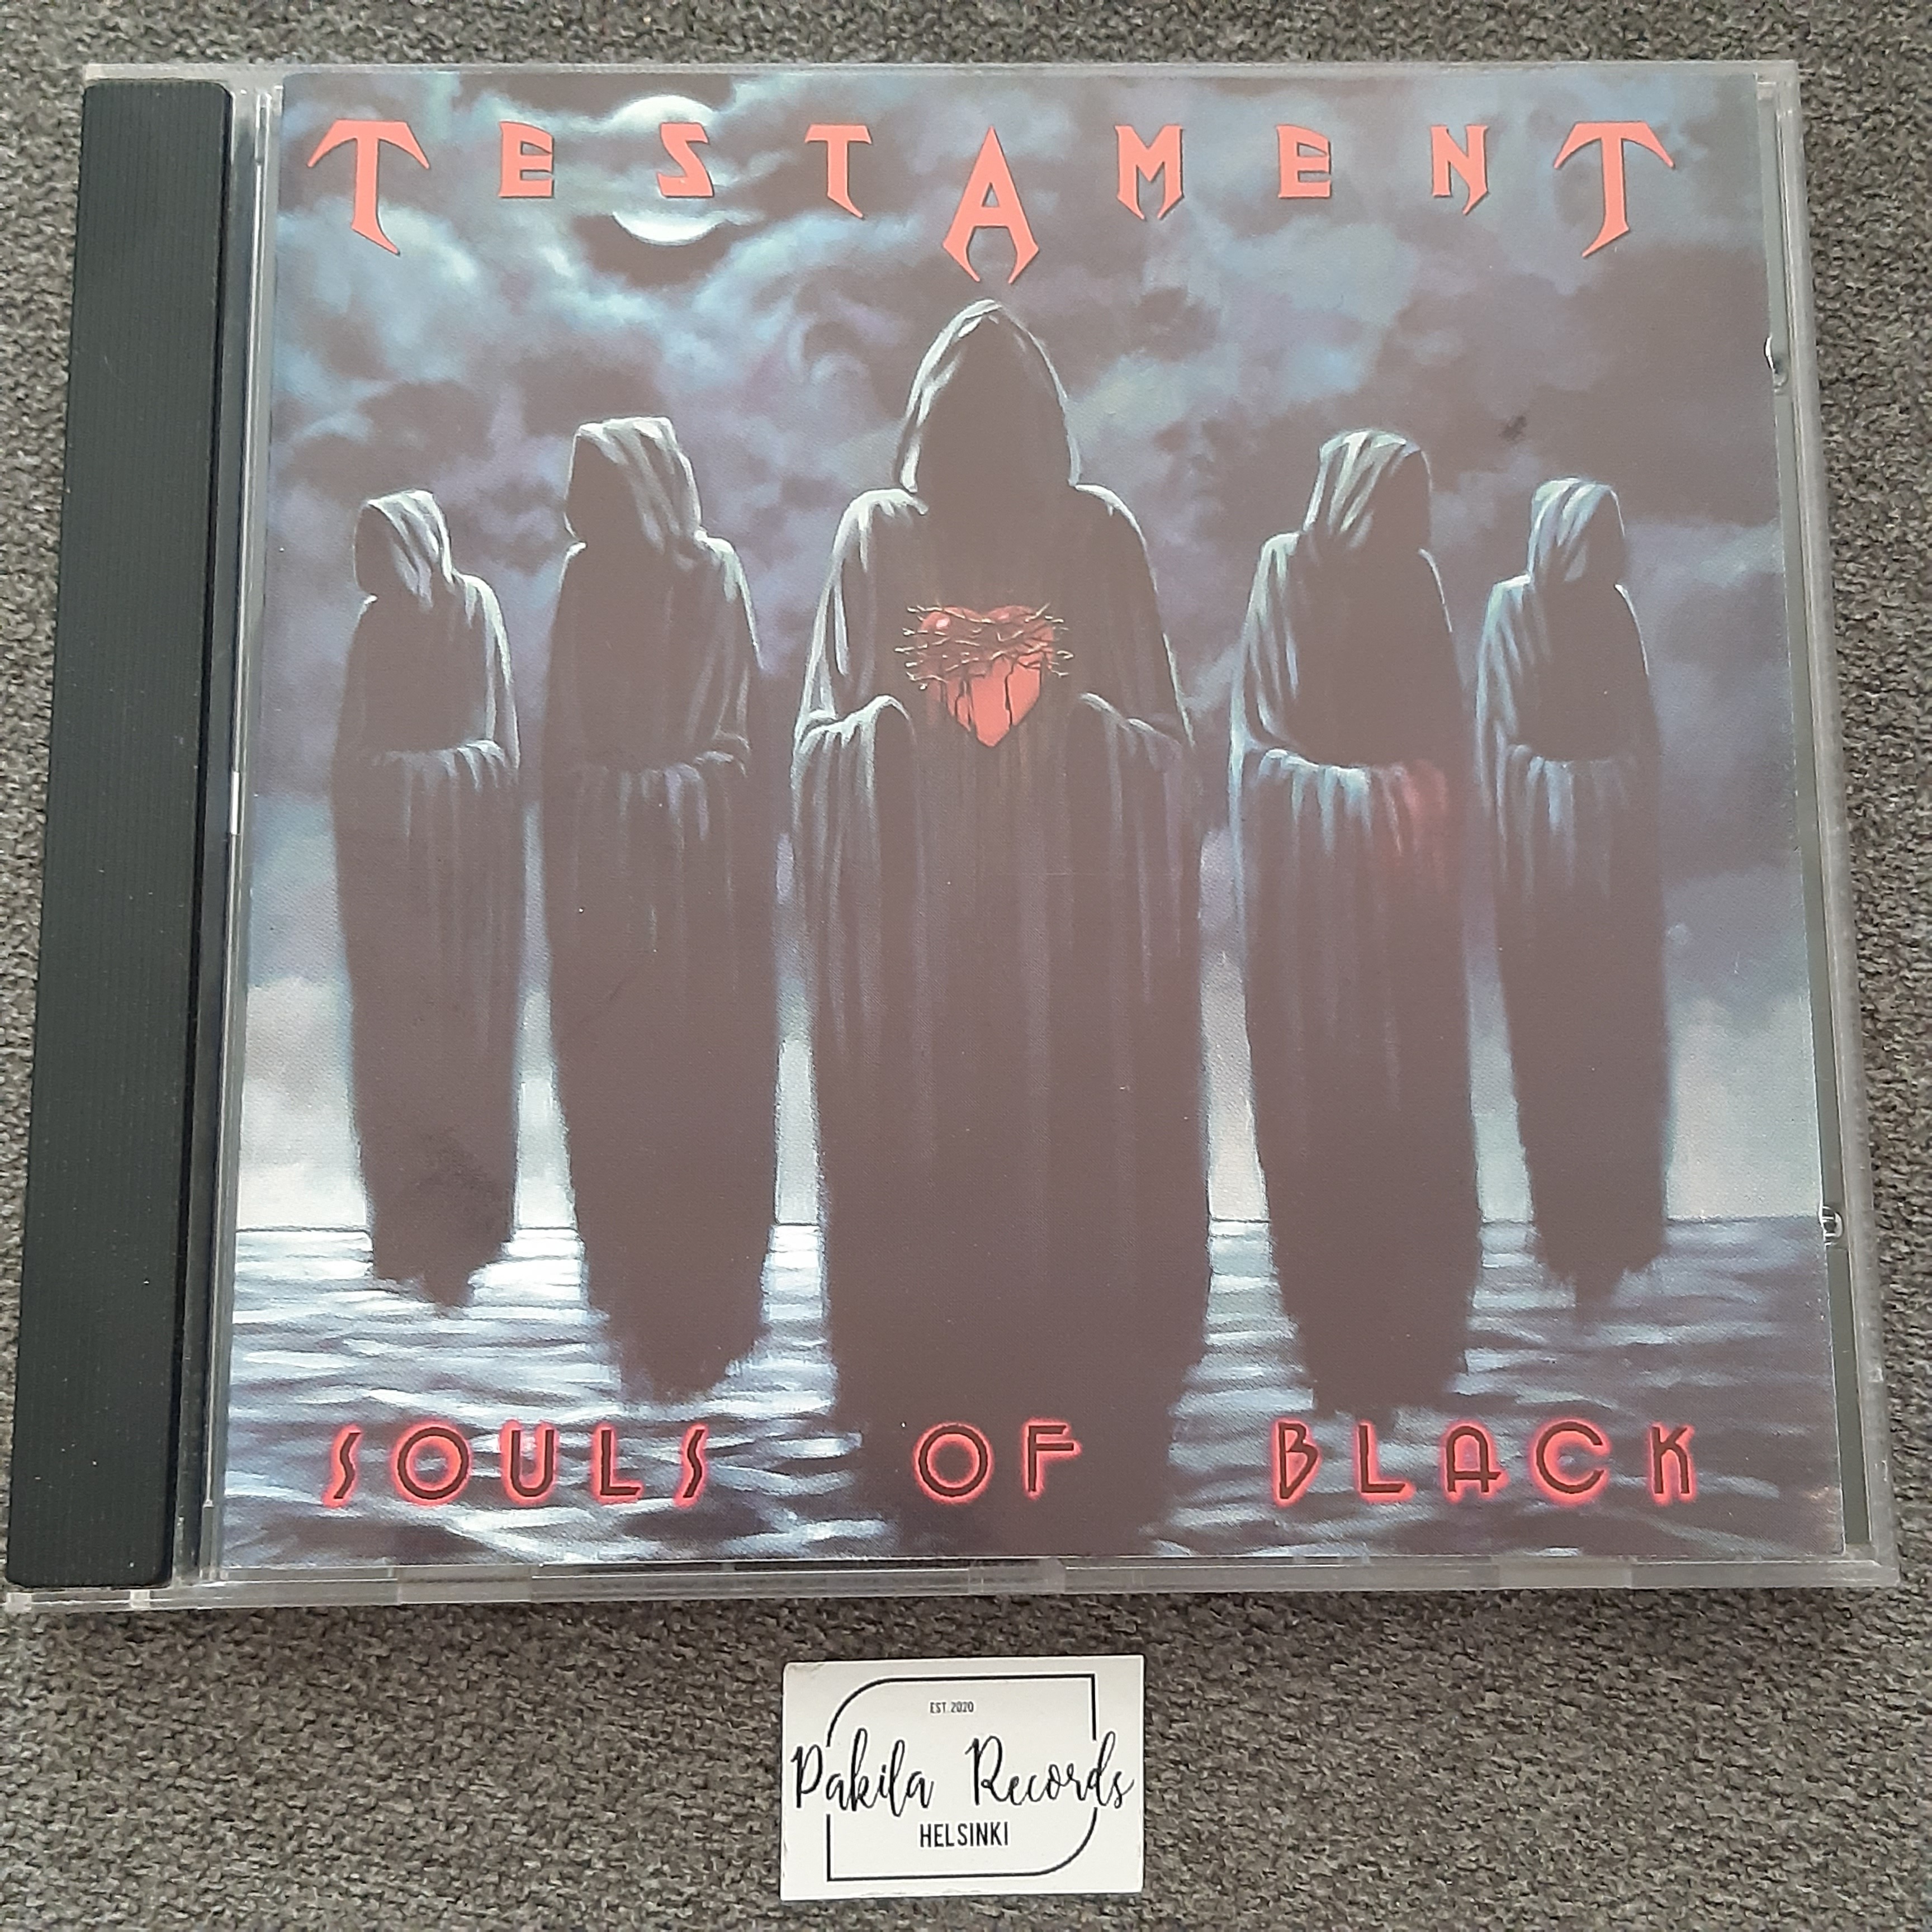 Testament - Souls Of Black - CD (käytetty)